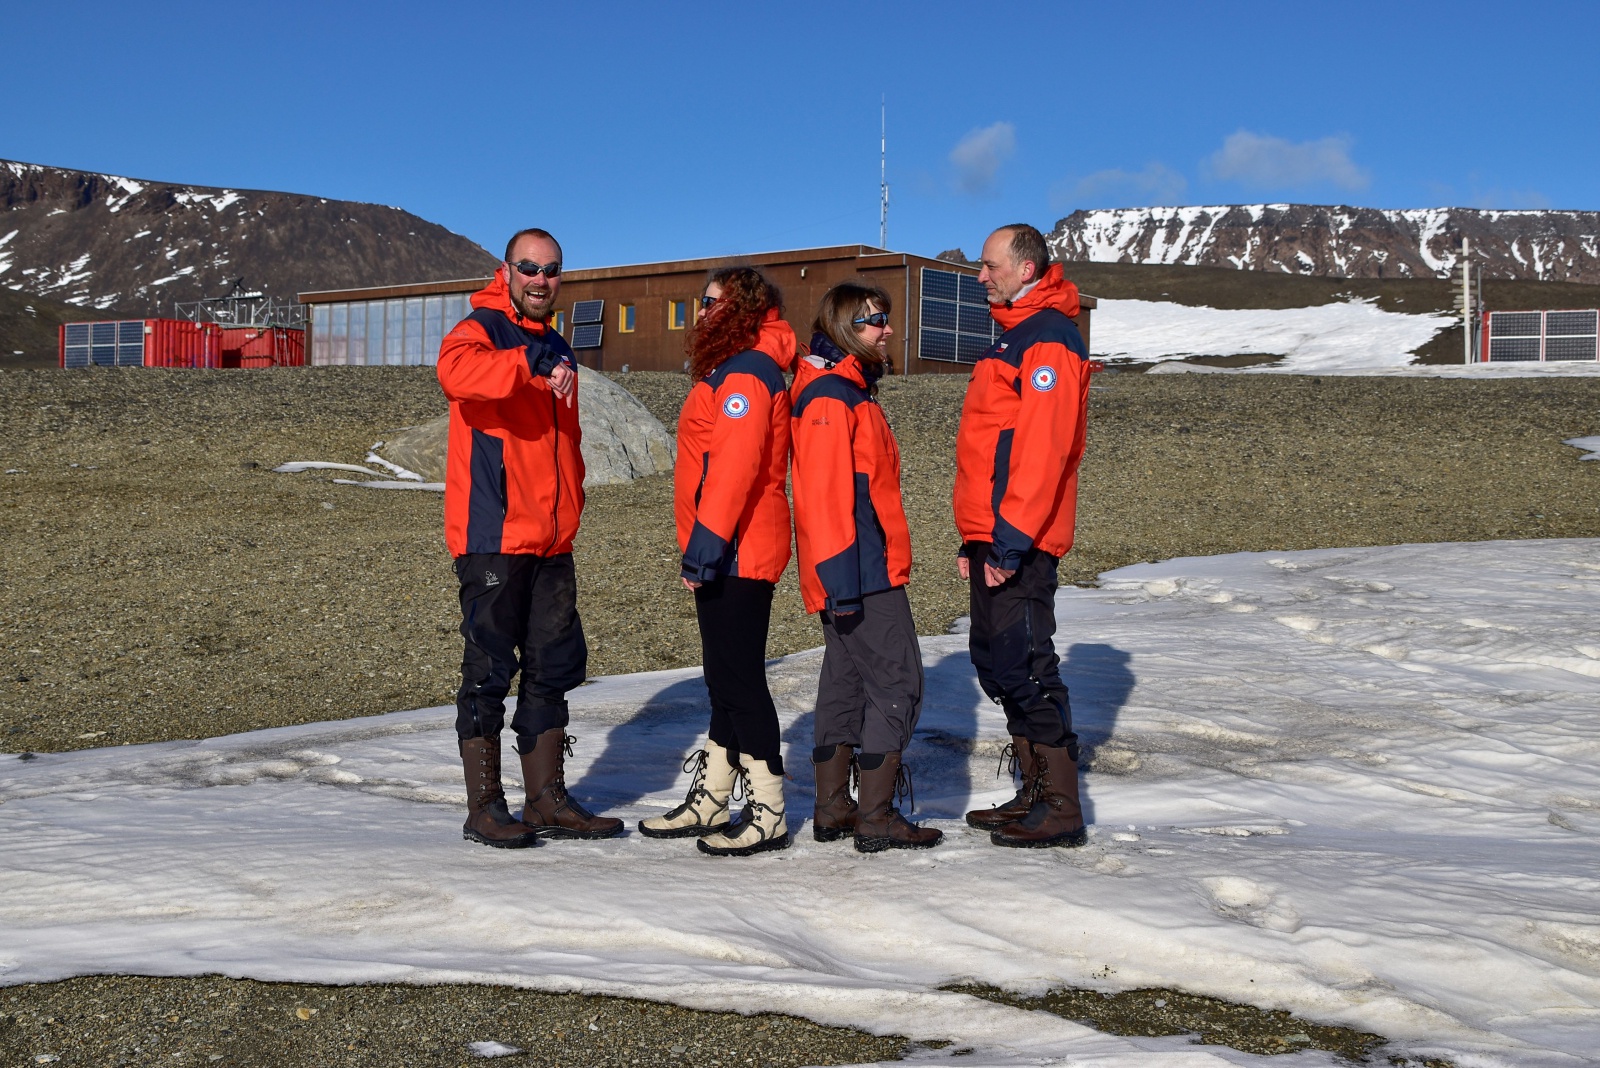 Termoprádlo tuhé podmínky na Antarktidě vydrželo, hlásí výzkumníci -  Břeclavský deník